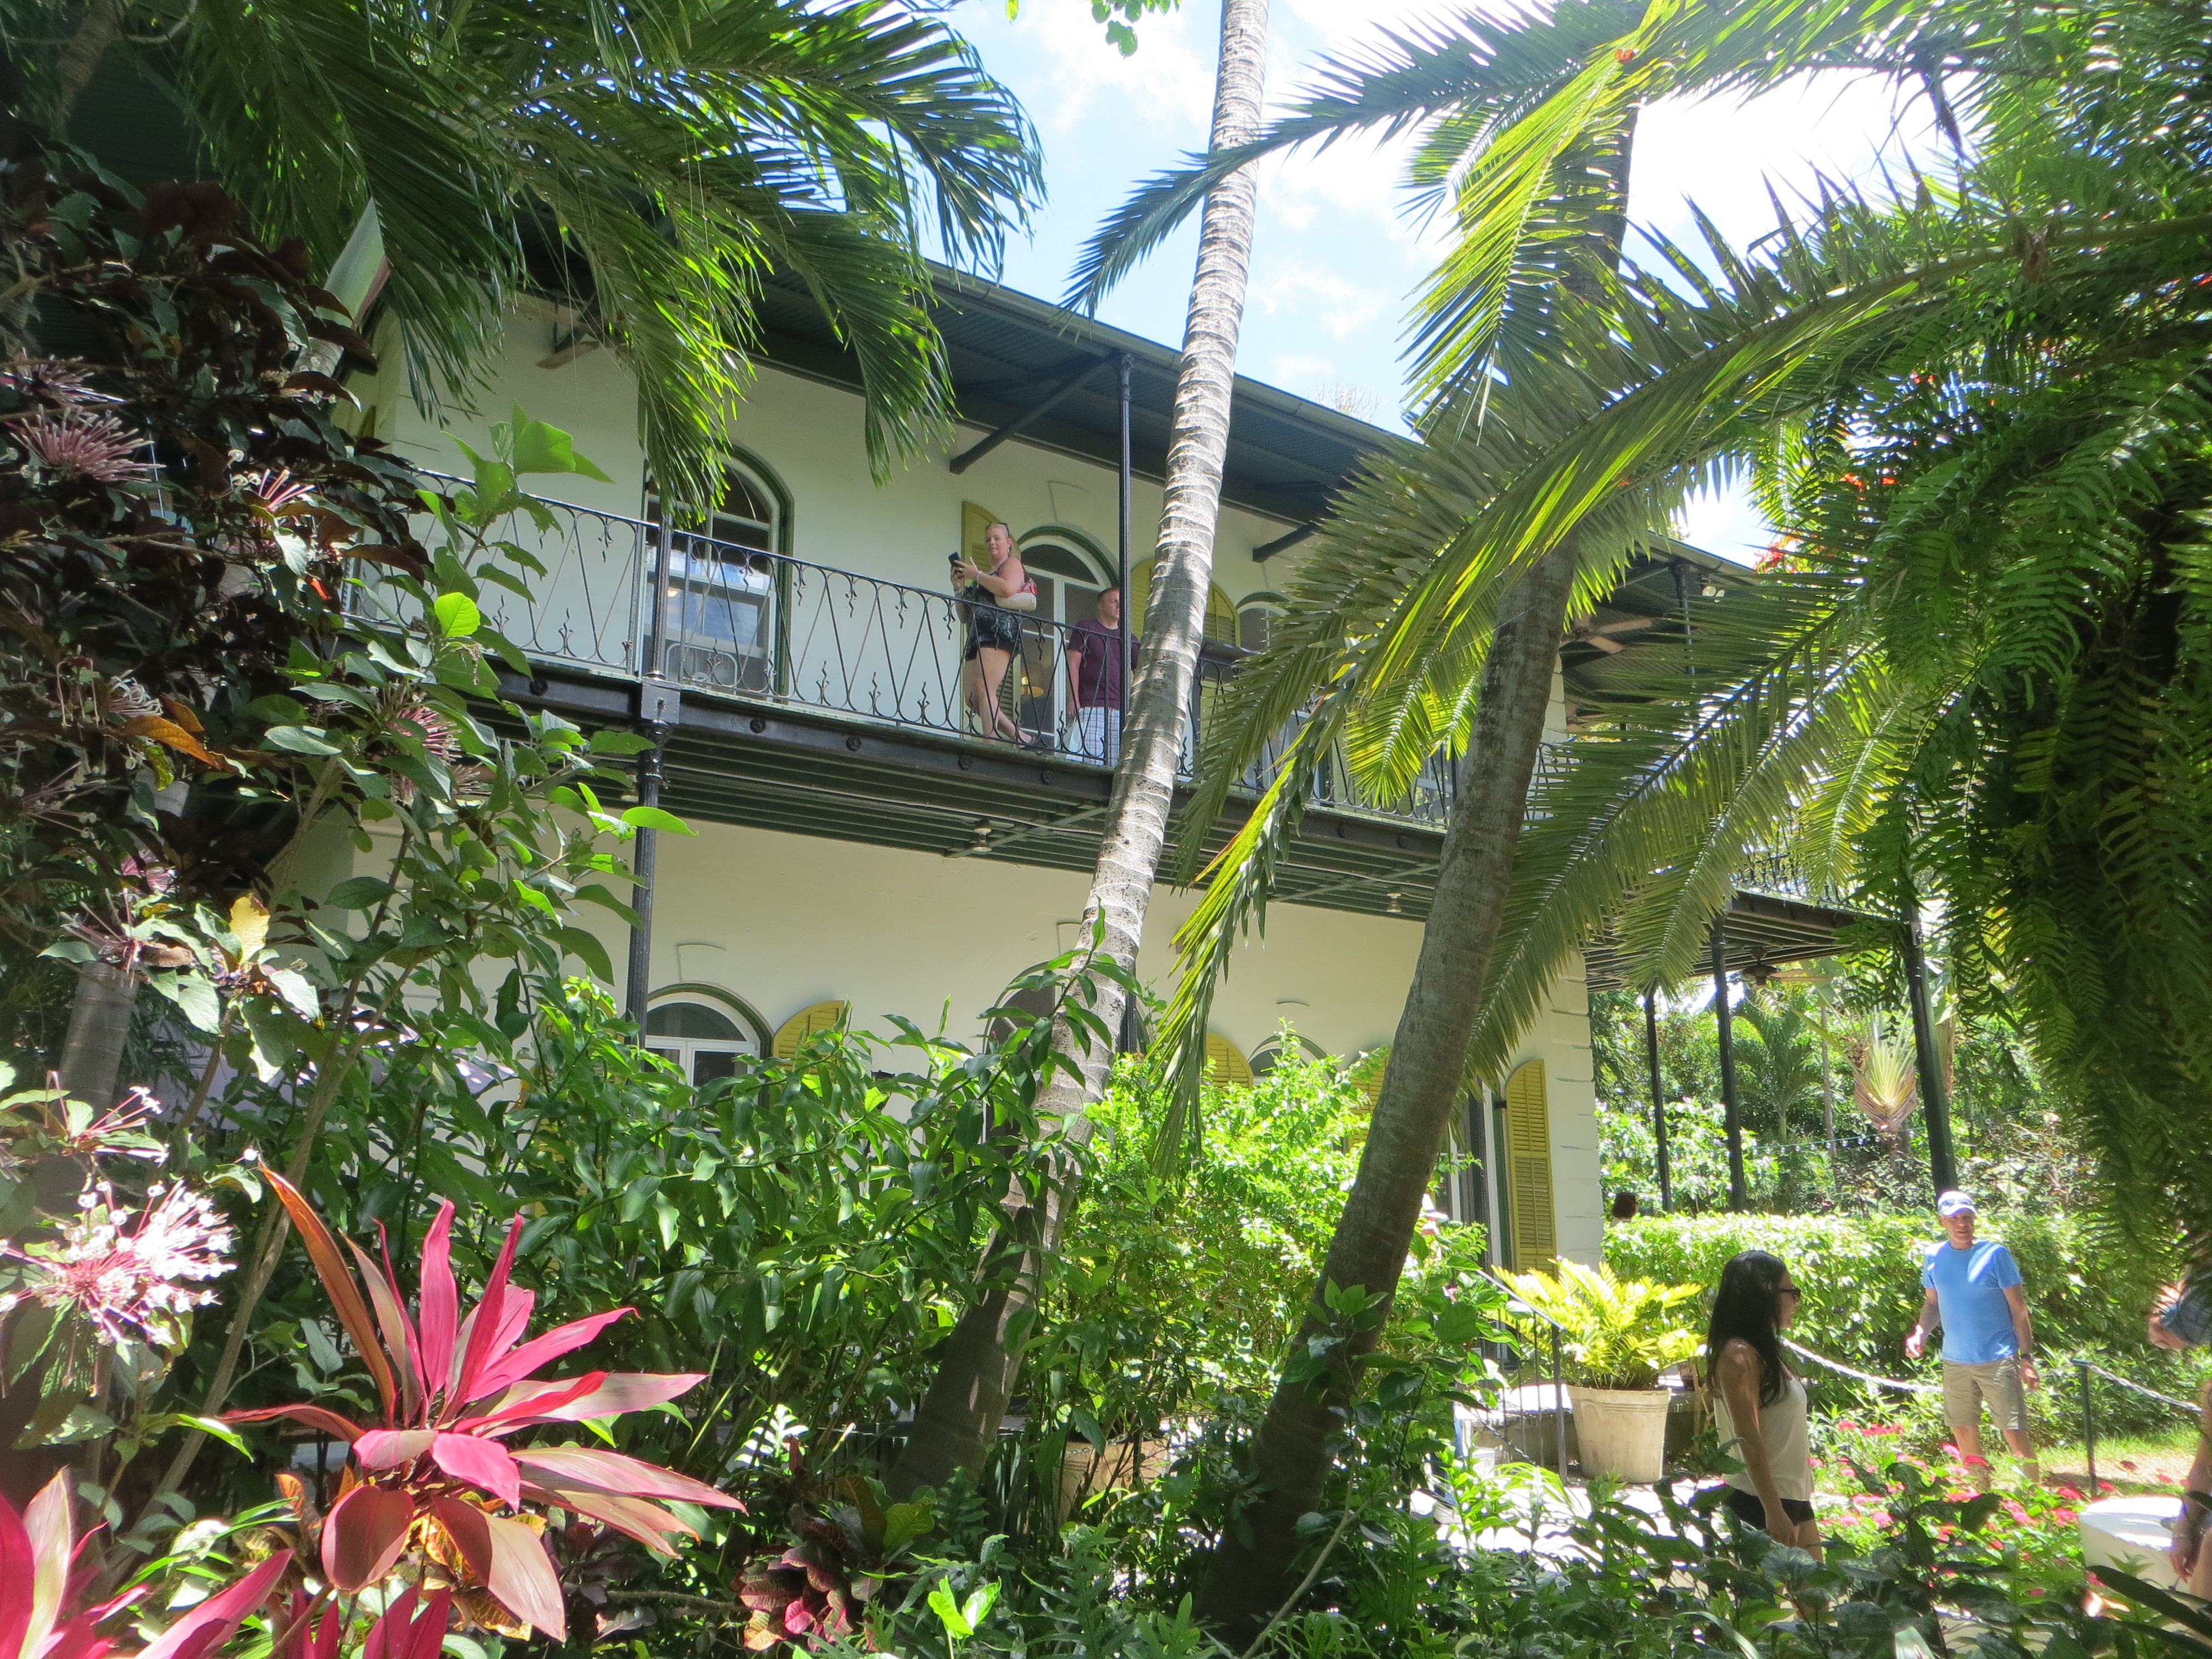 Während seiner Zeit auf Key West lebte Ernest Hemingway acht Jahre lang in diesem Haus